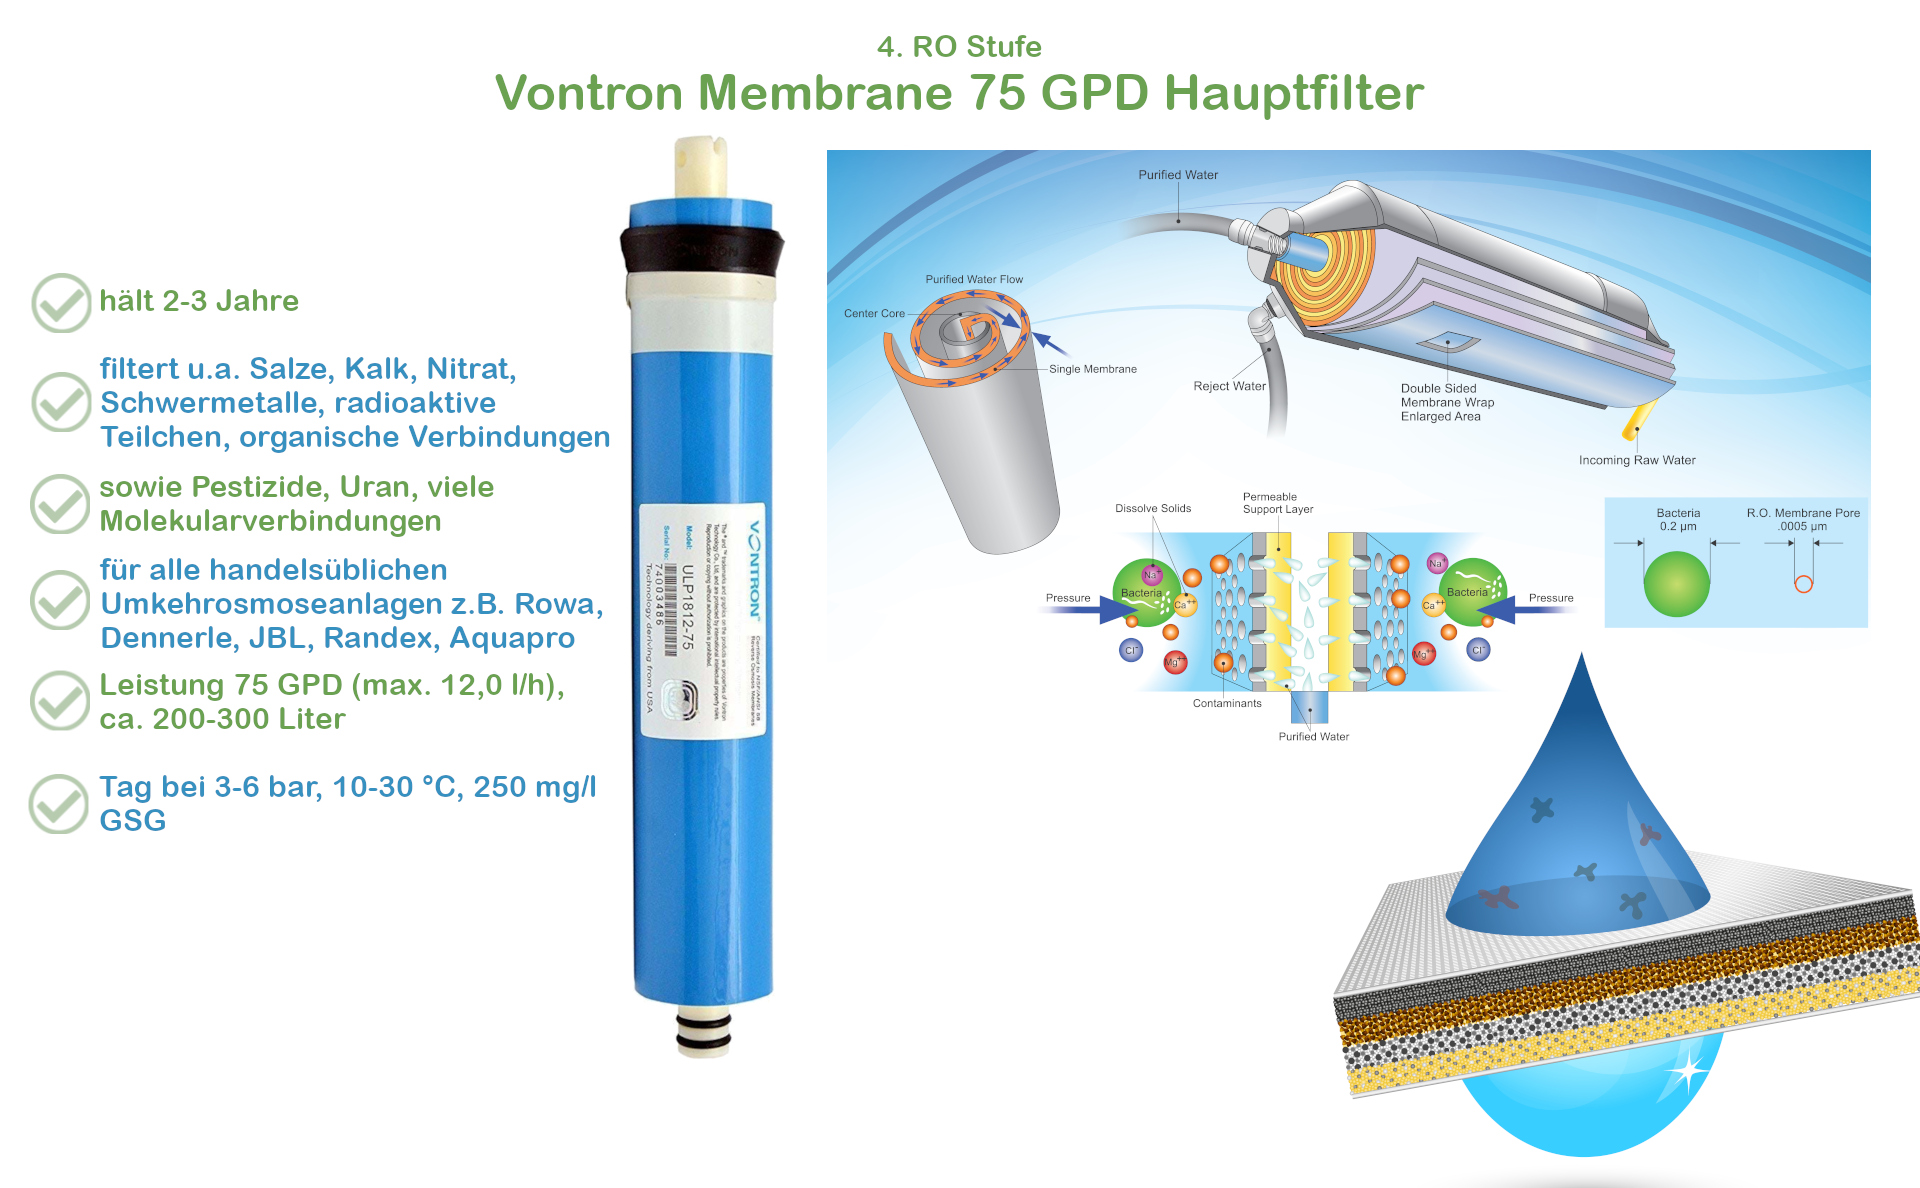 Vontron-Membran, ideal für Umkehrosmose, 75 GPD, speziell für die